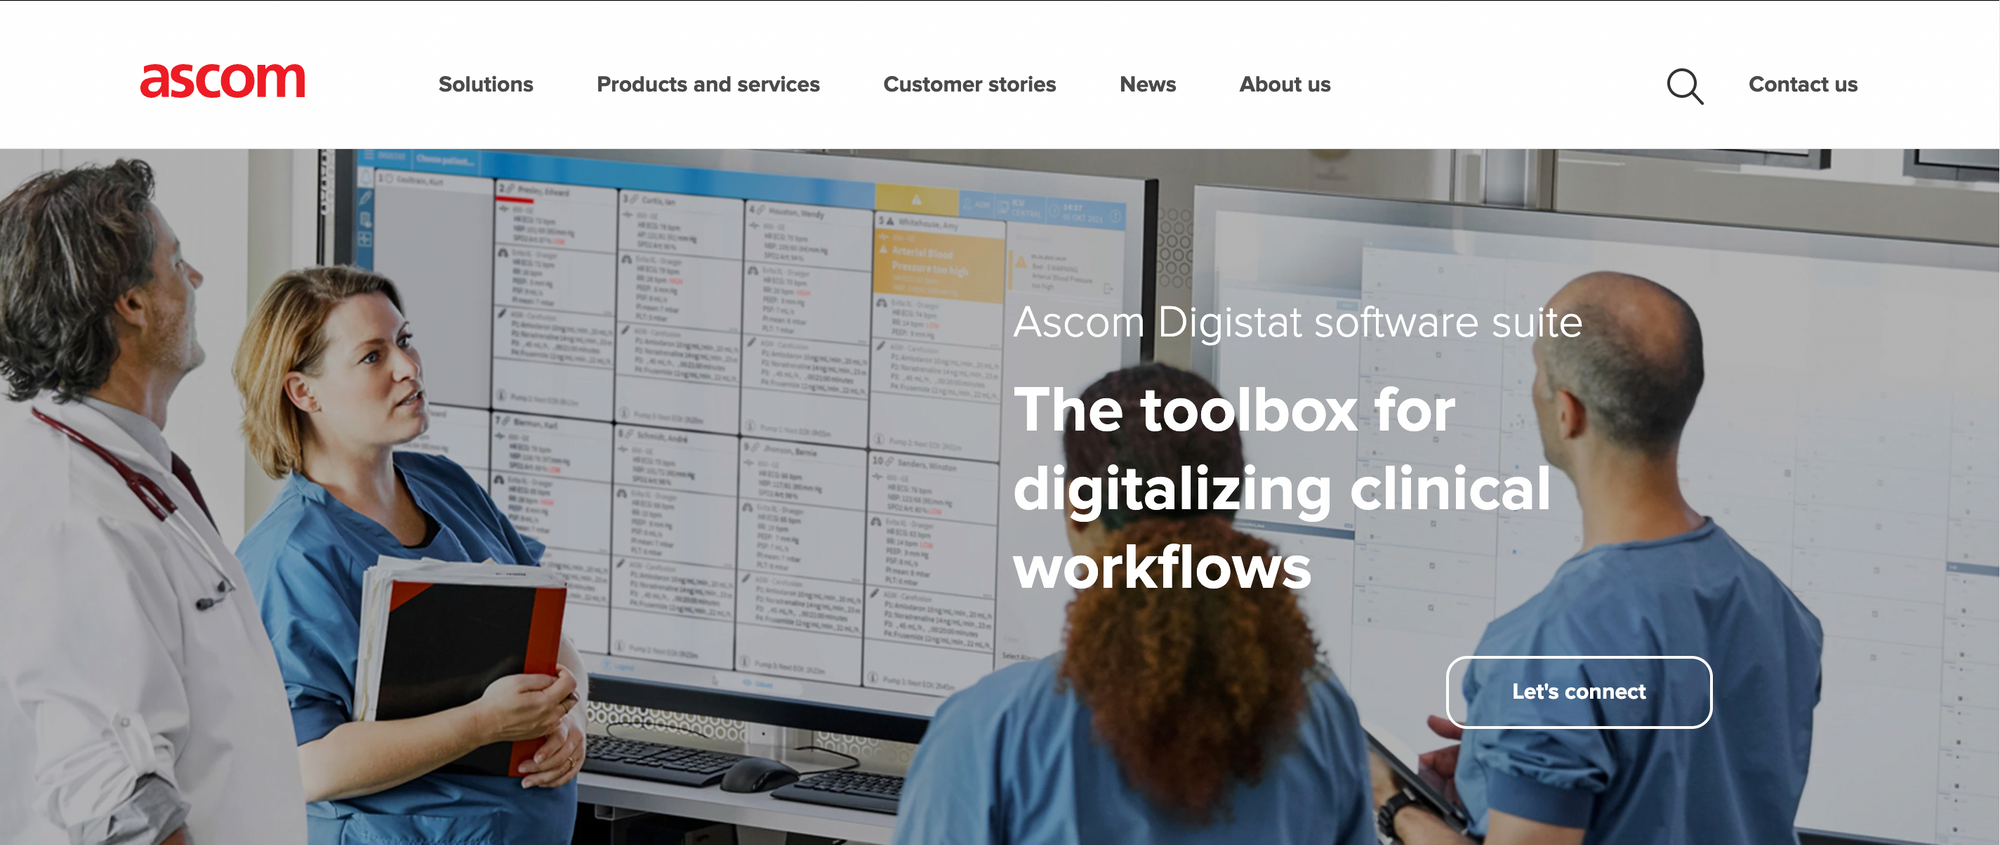 Website of Ascom